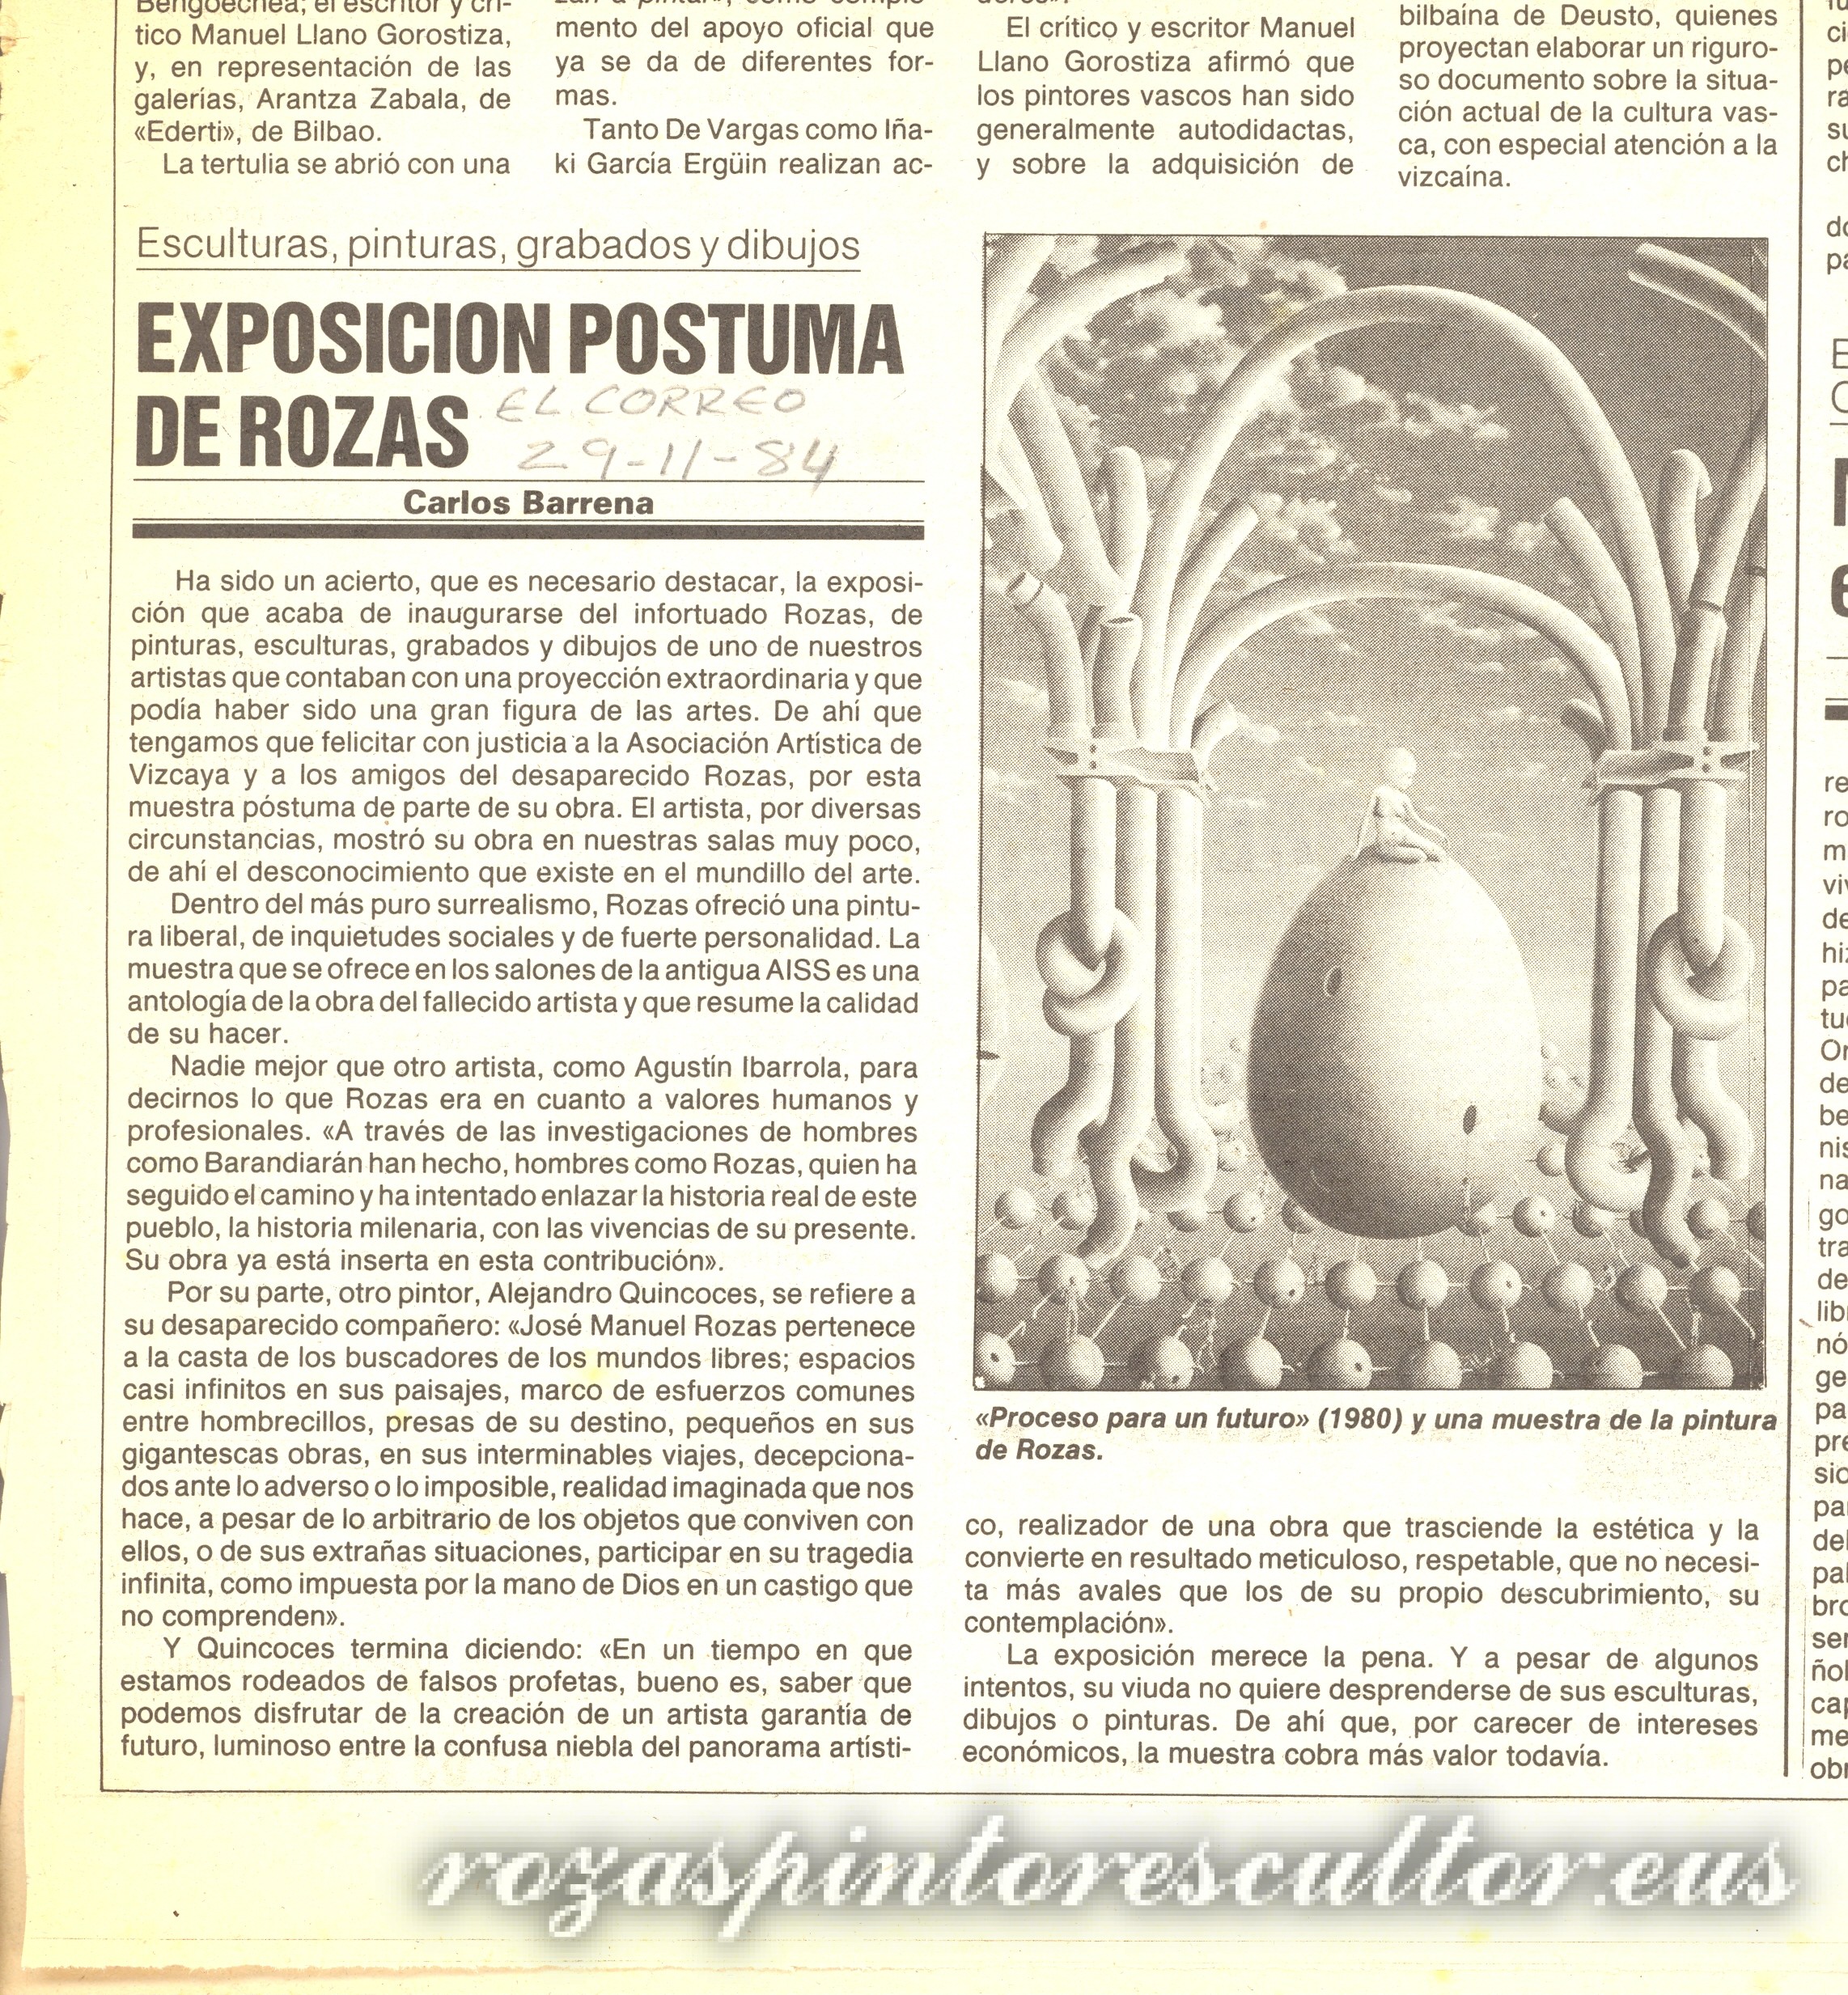 1984 El Correo, Deia, Egin and La Gaceta – Posthumous exhibition